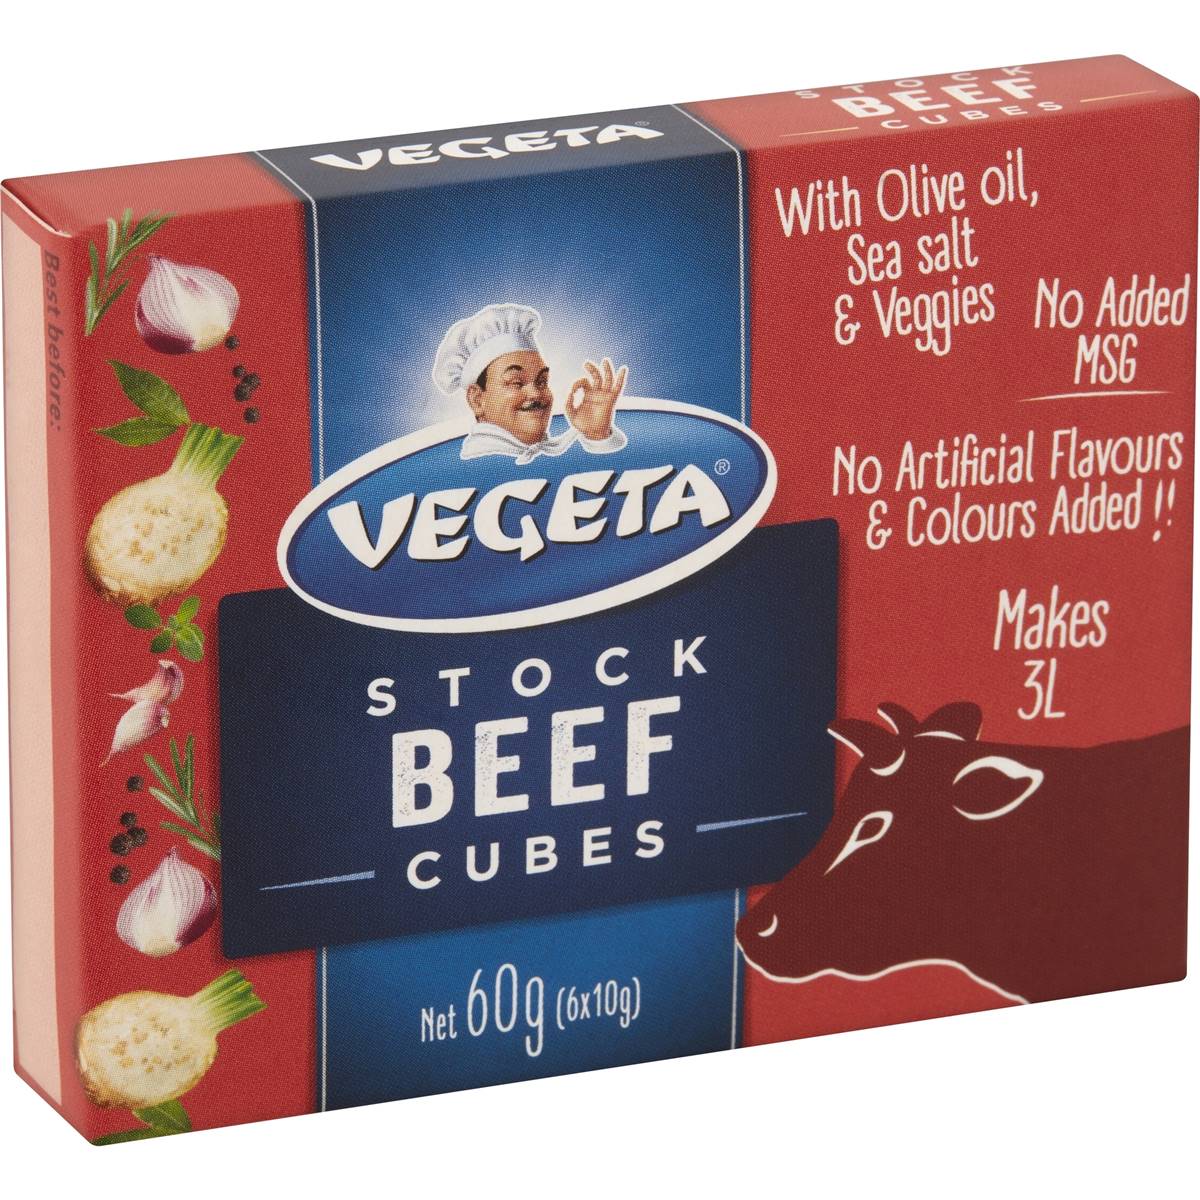 Calories in Vegeta Beef Stock Cubes